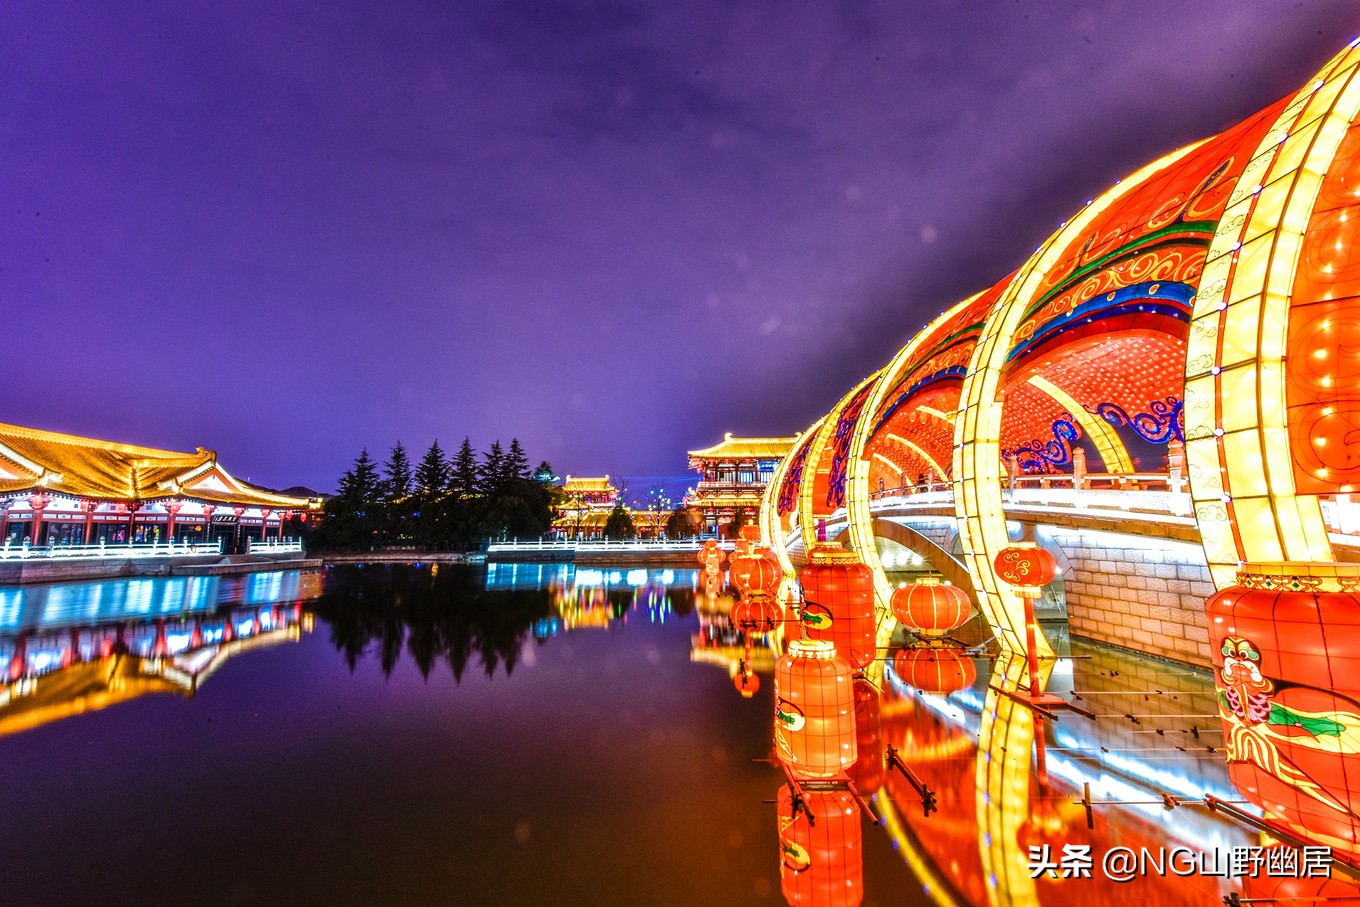 西安最美夜景:灯火辉煌的热闹街景,重现昔日的大唐盛世